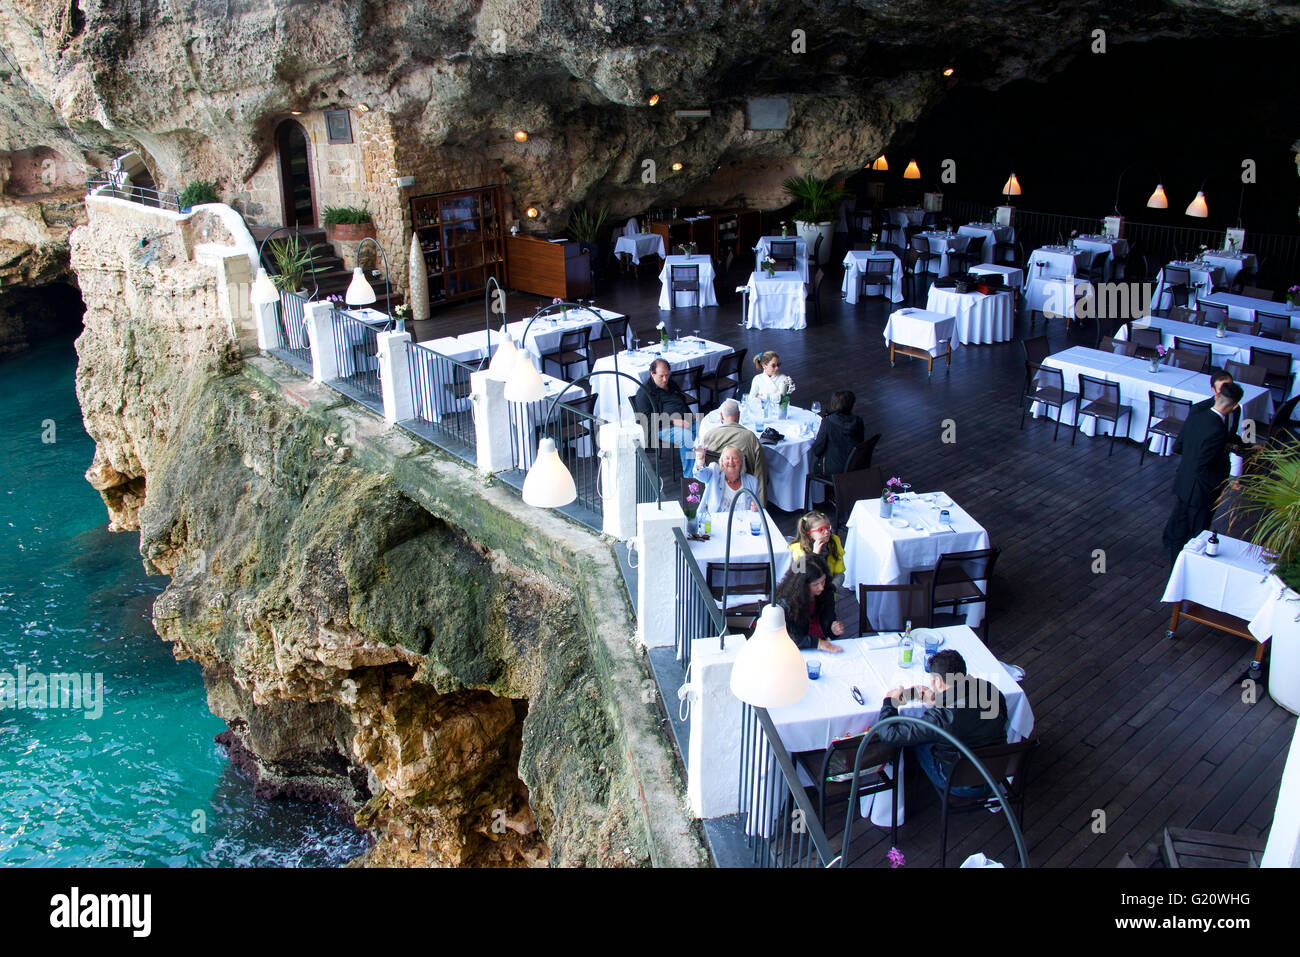 La famosa Grotta Palazzese restaurante, situado en una cueva en los acantilados en Polignano a Mare, Puglia, Italia Foto de stock